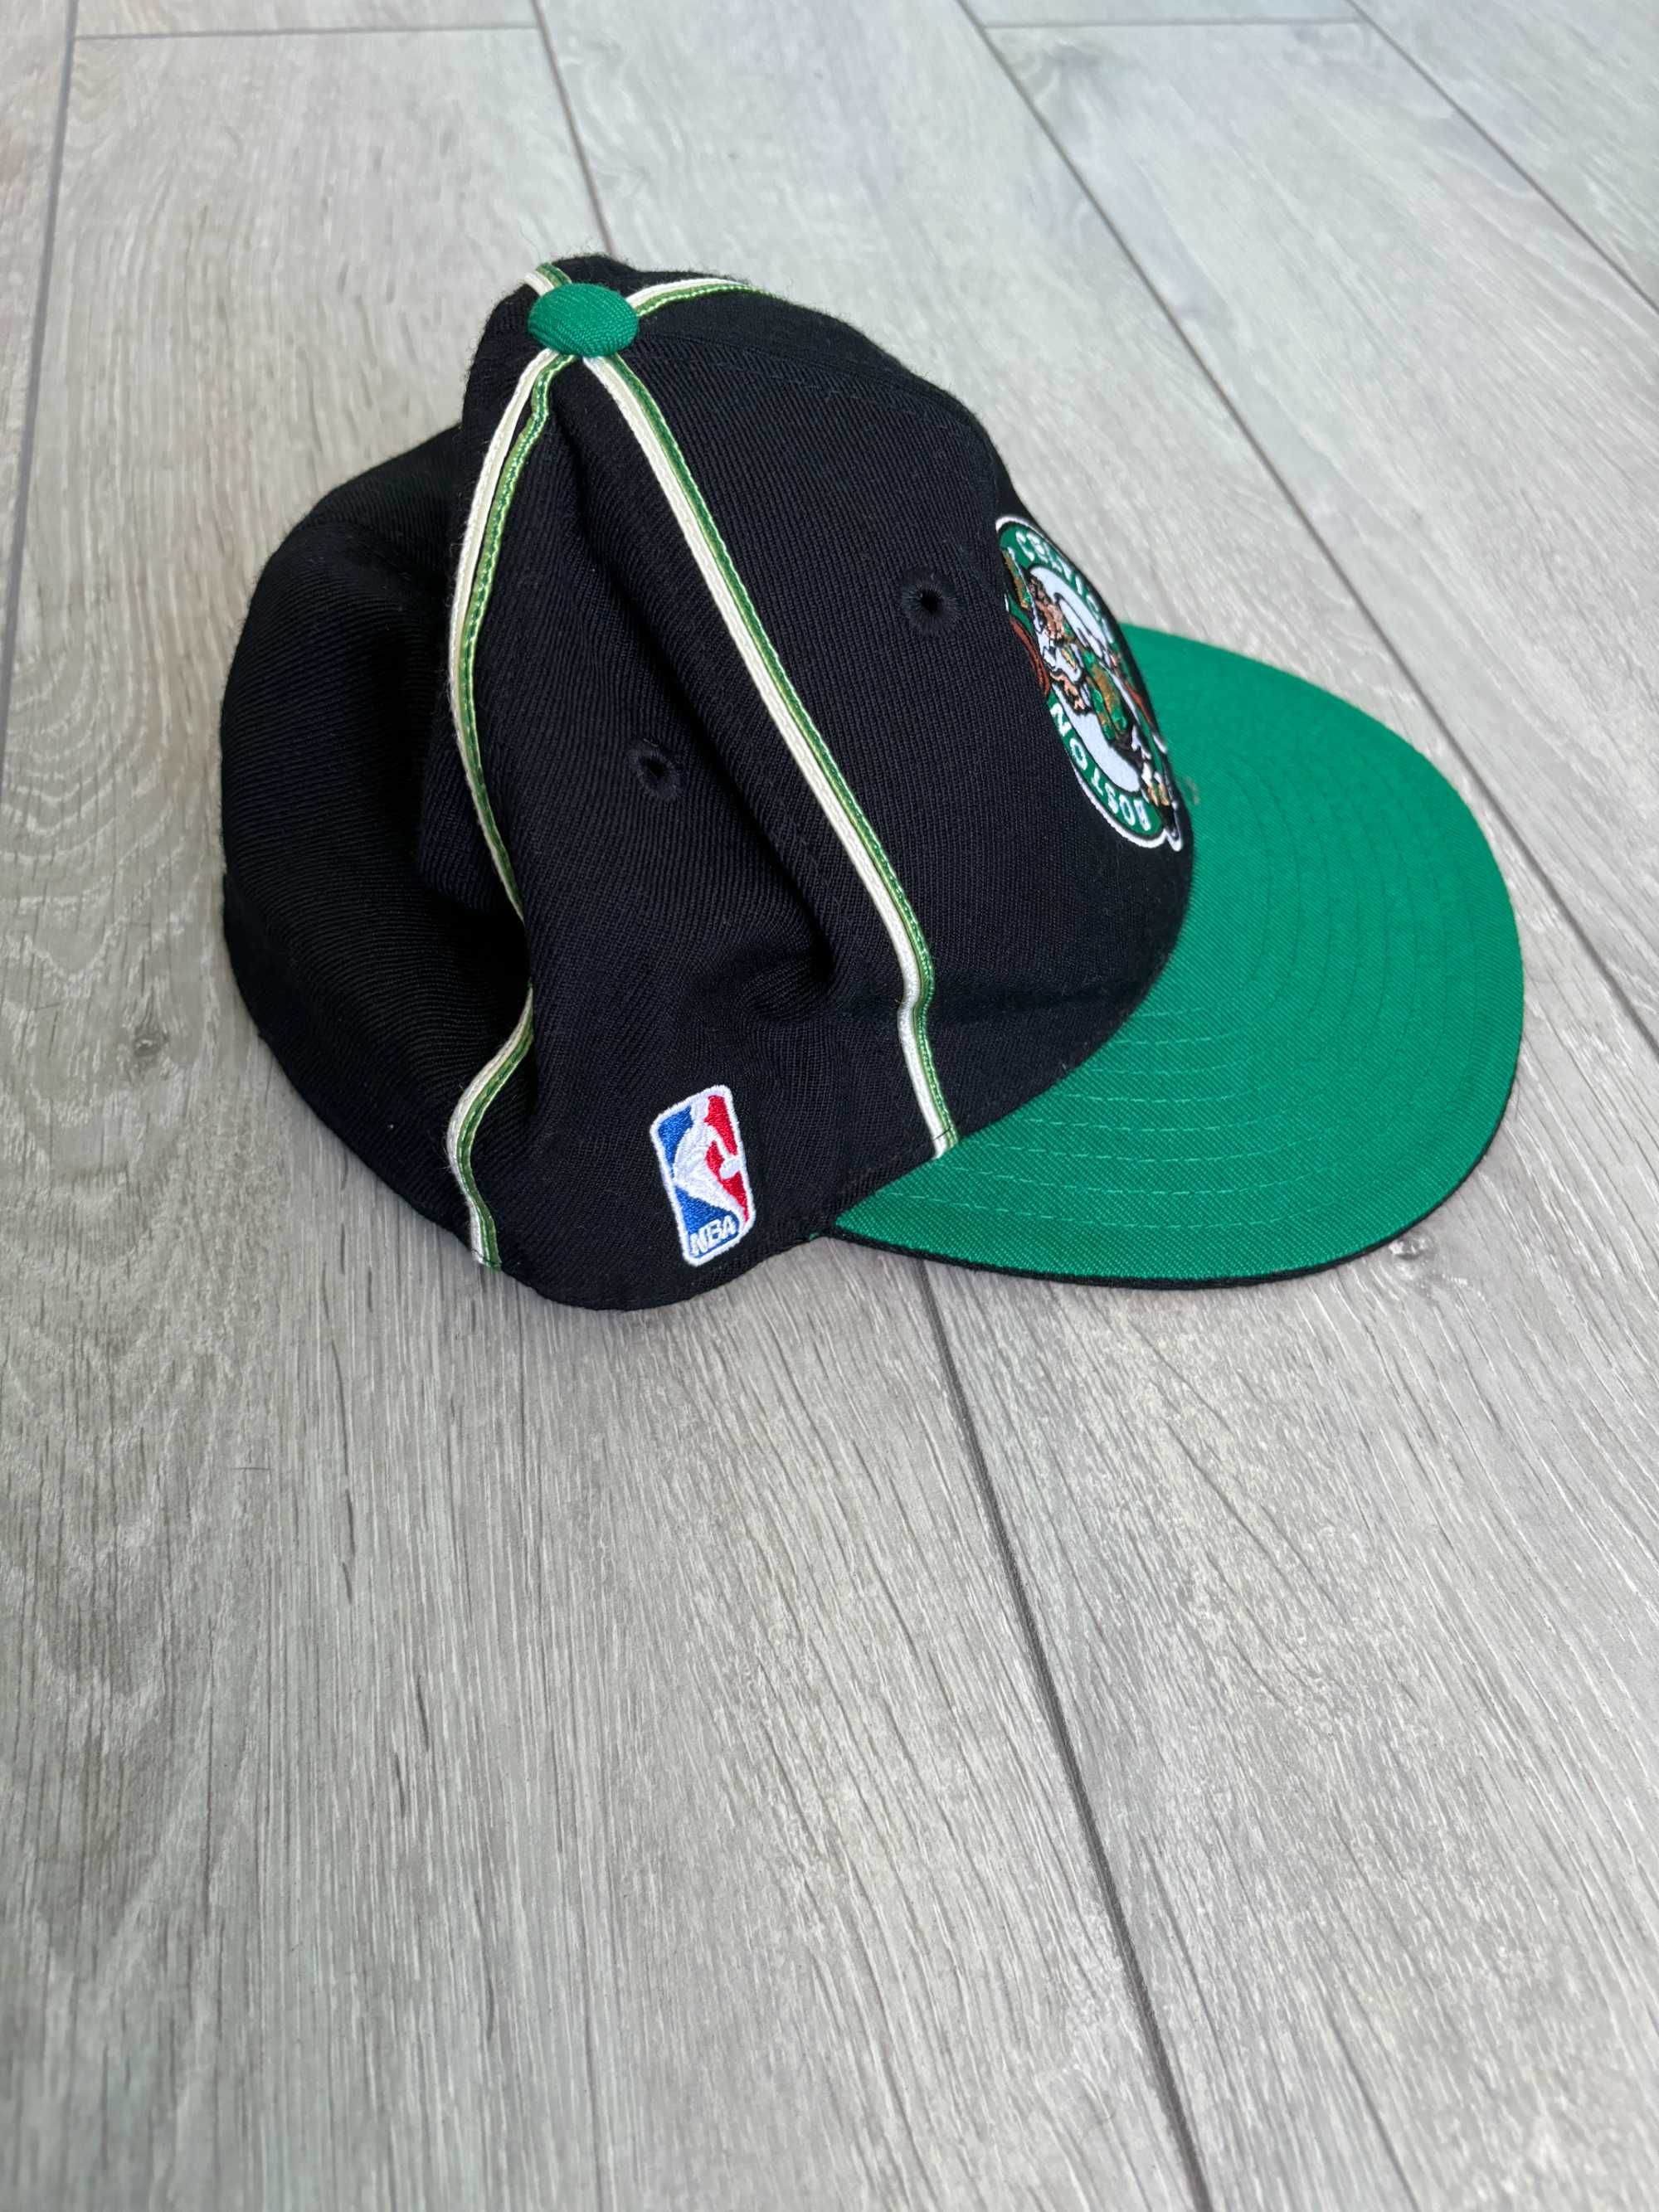 Кепка Boston Celtics Basketball Nba Reebok Cap Нба Бейсболка Оригинал